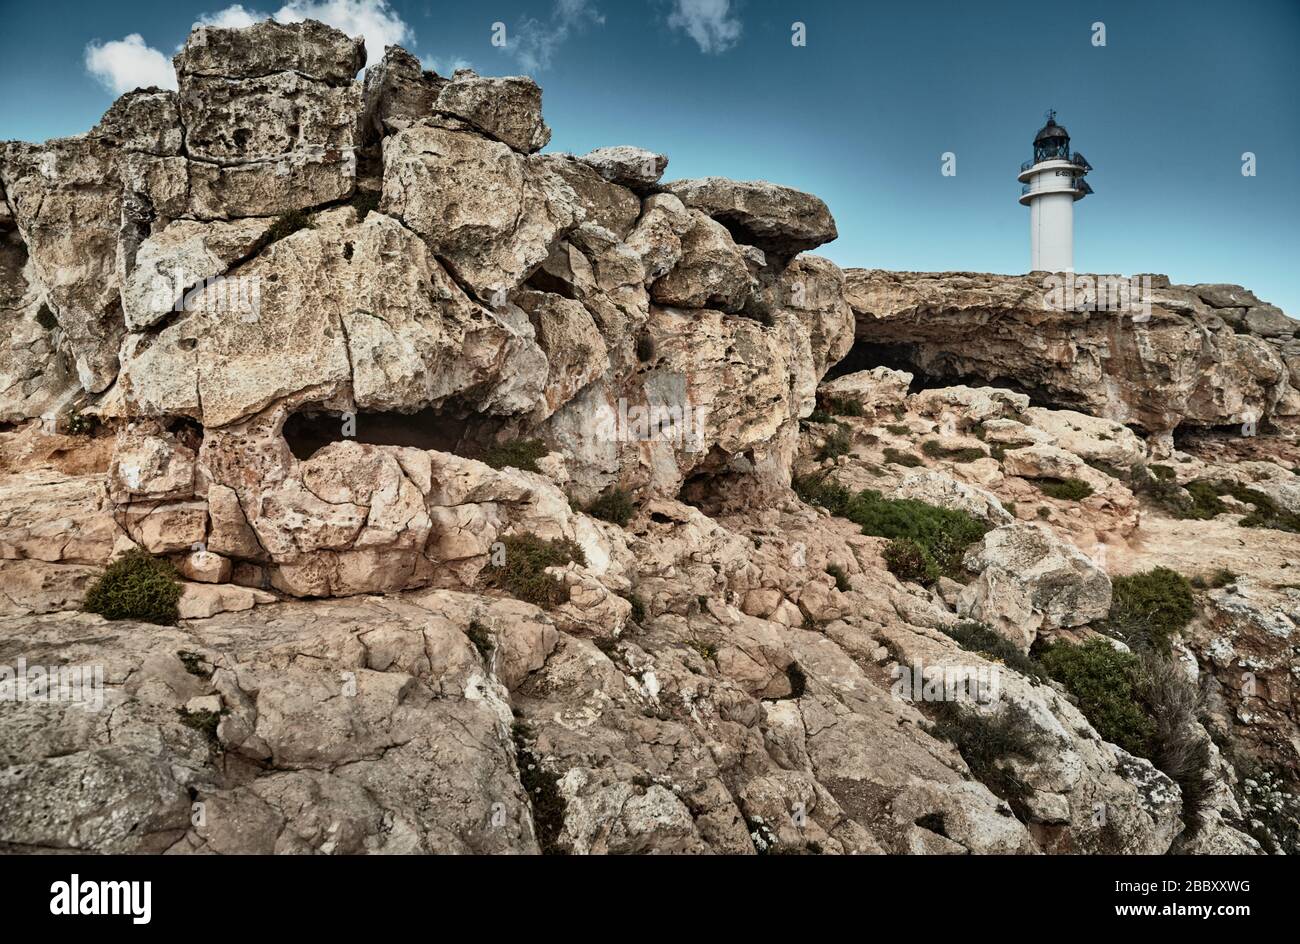 Faro sull'isola di Formentera, Spagna, il cielo blu con nuvole bianche, senza persone, rocce, pietre, tempo soleggiato Foto Stock